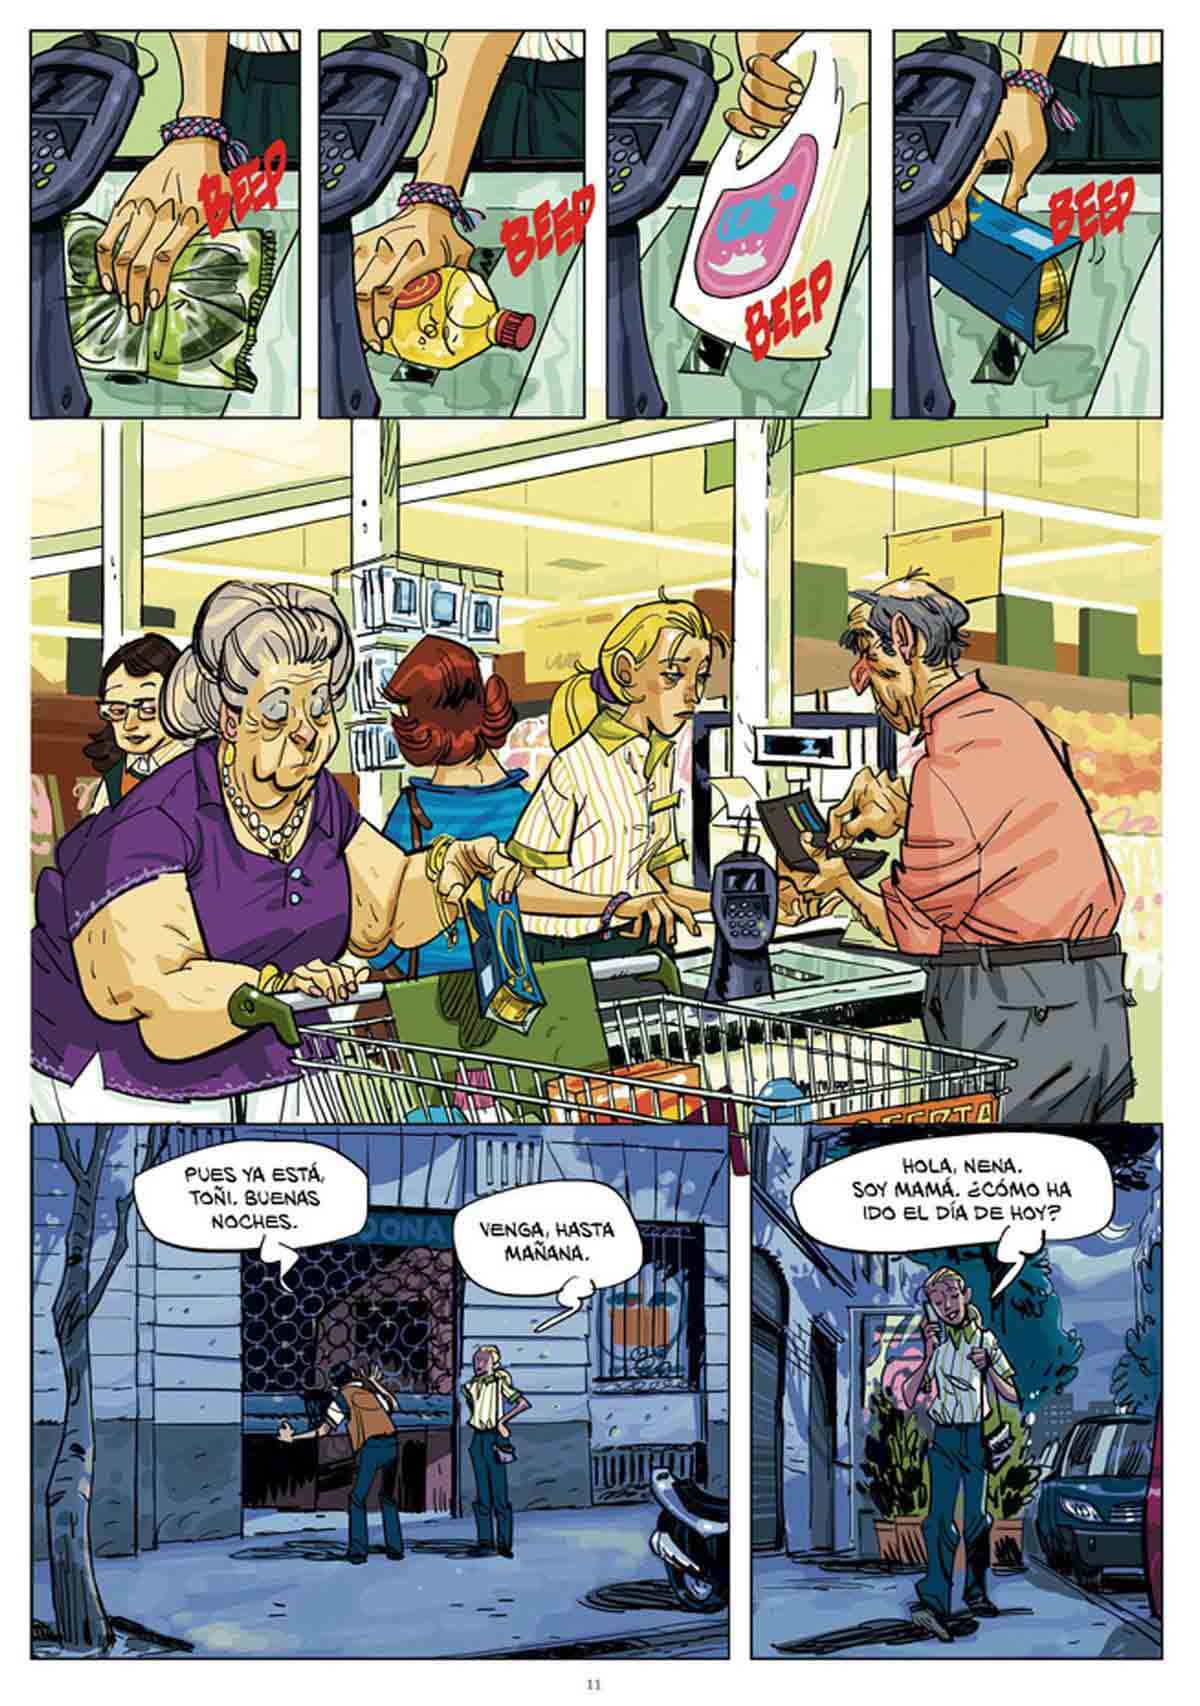 Golem-Comics-comic-El-Fantasma-de-Gaudi-El-Torres-02